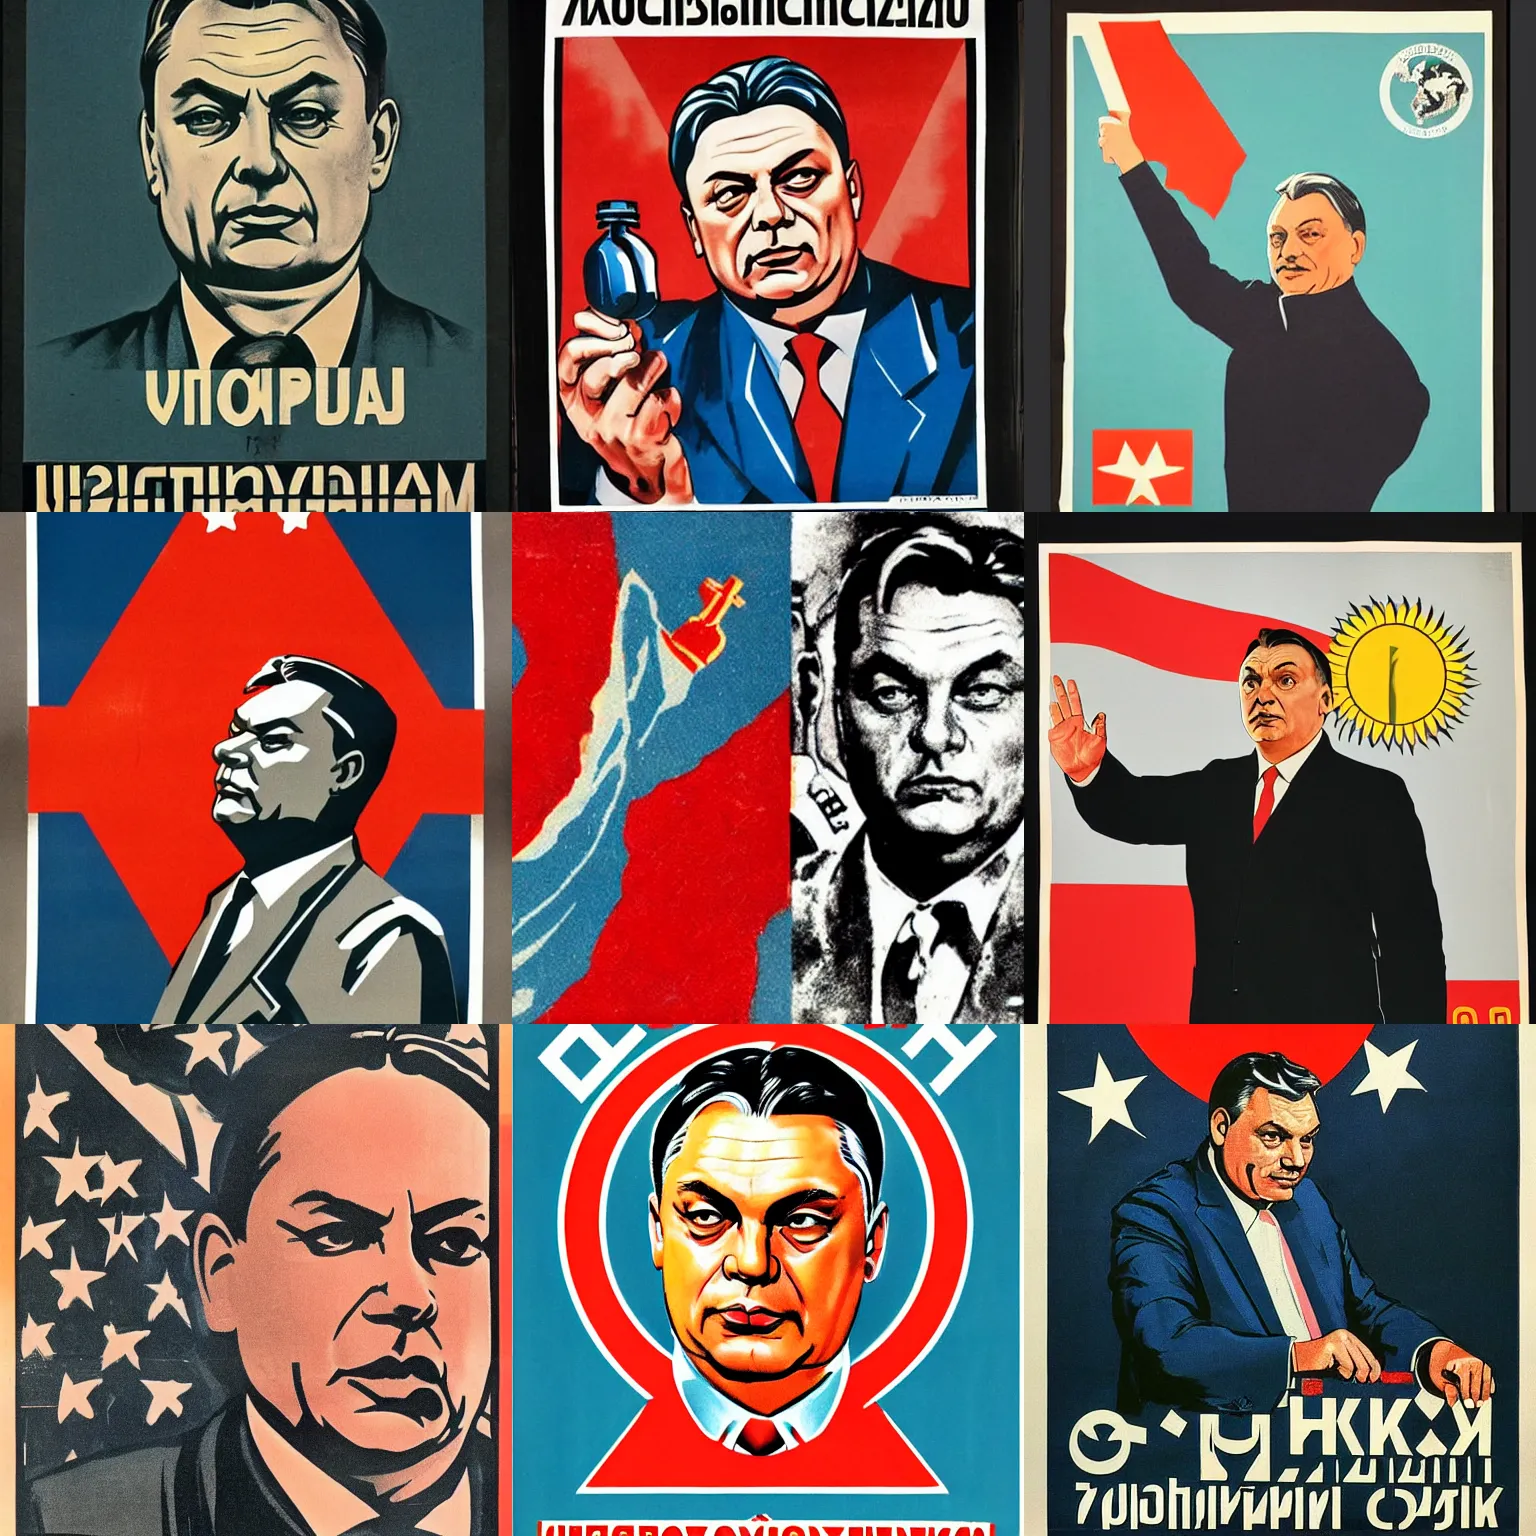 Prompt: soviet propaganda poster of viktor orban